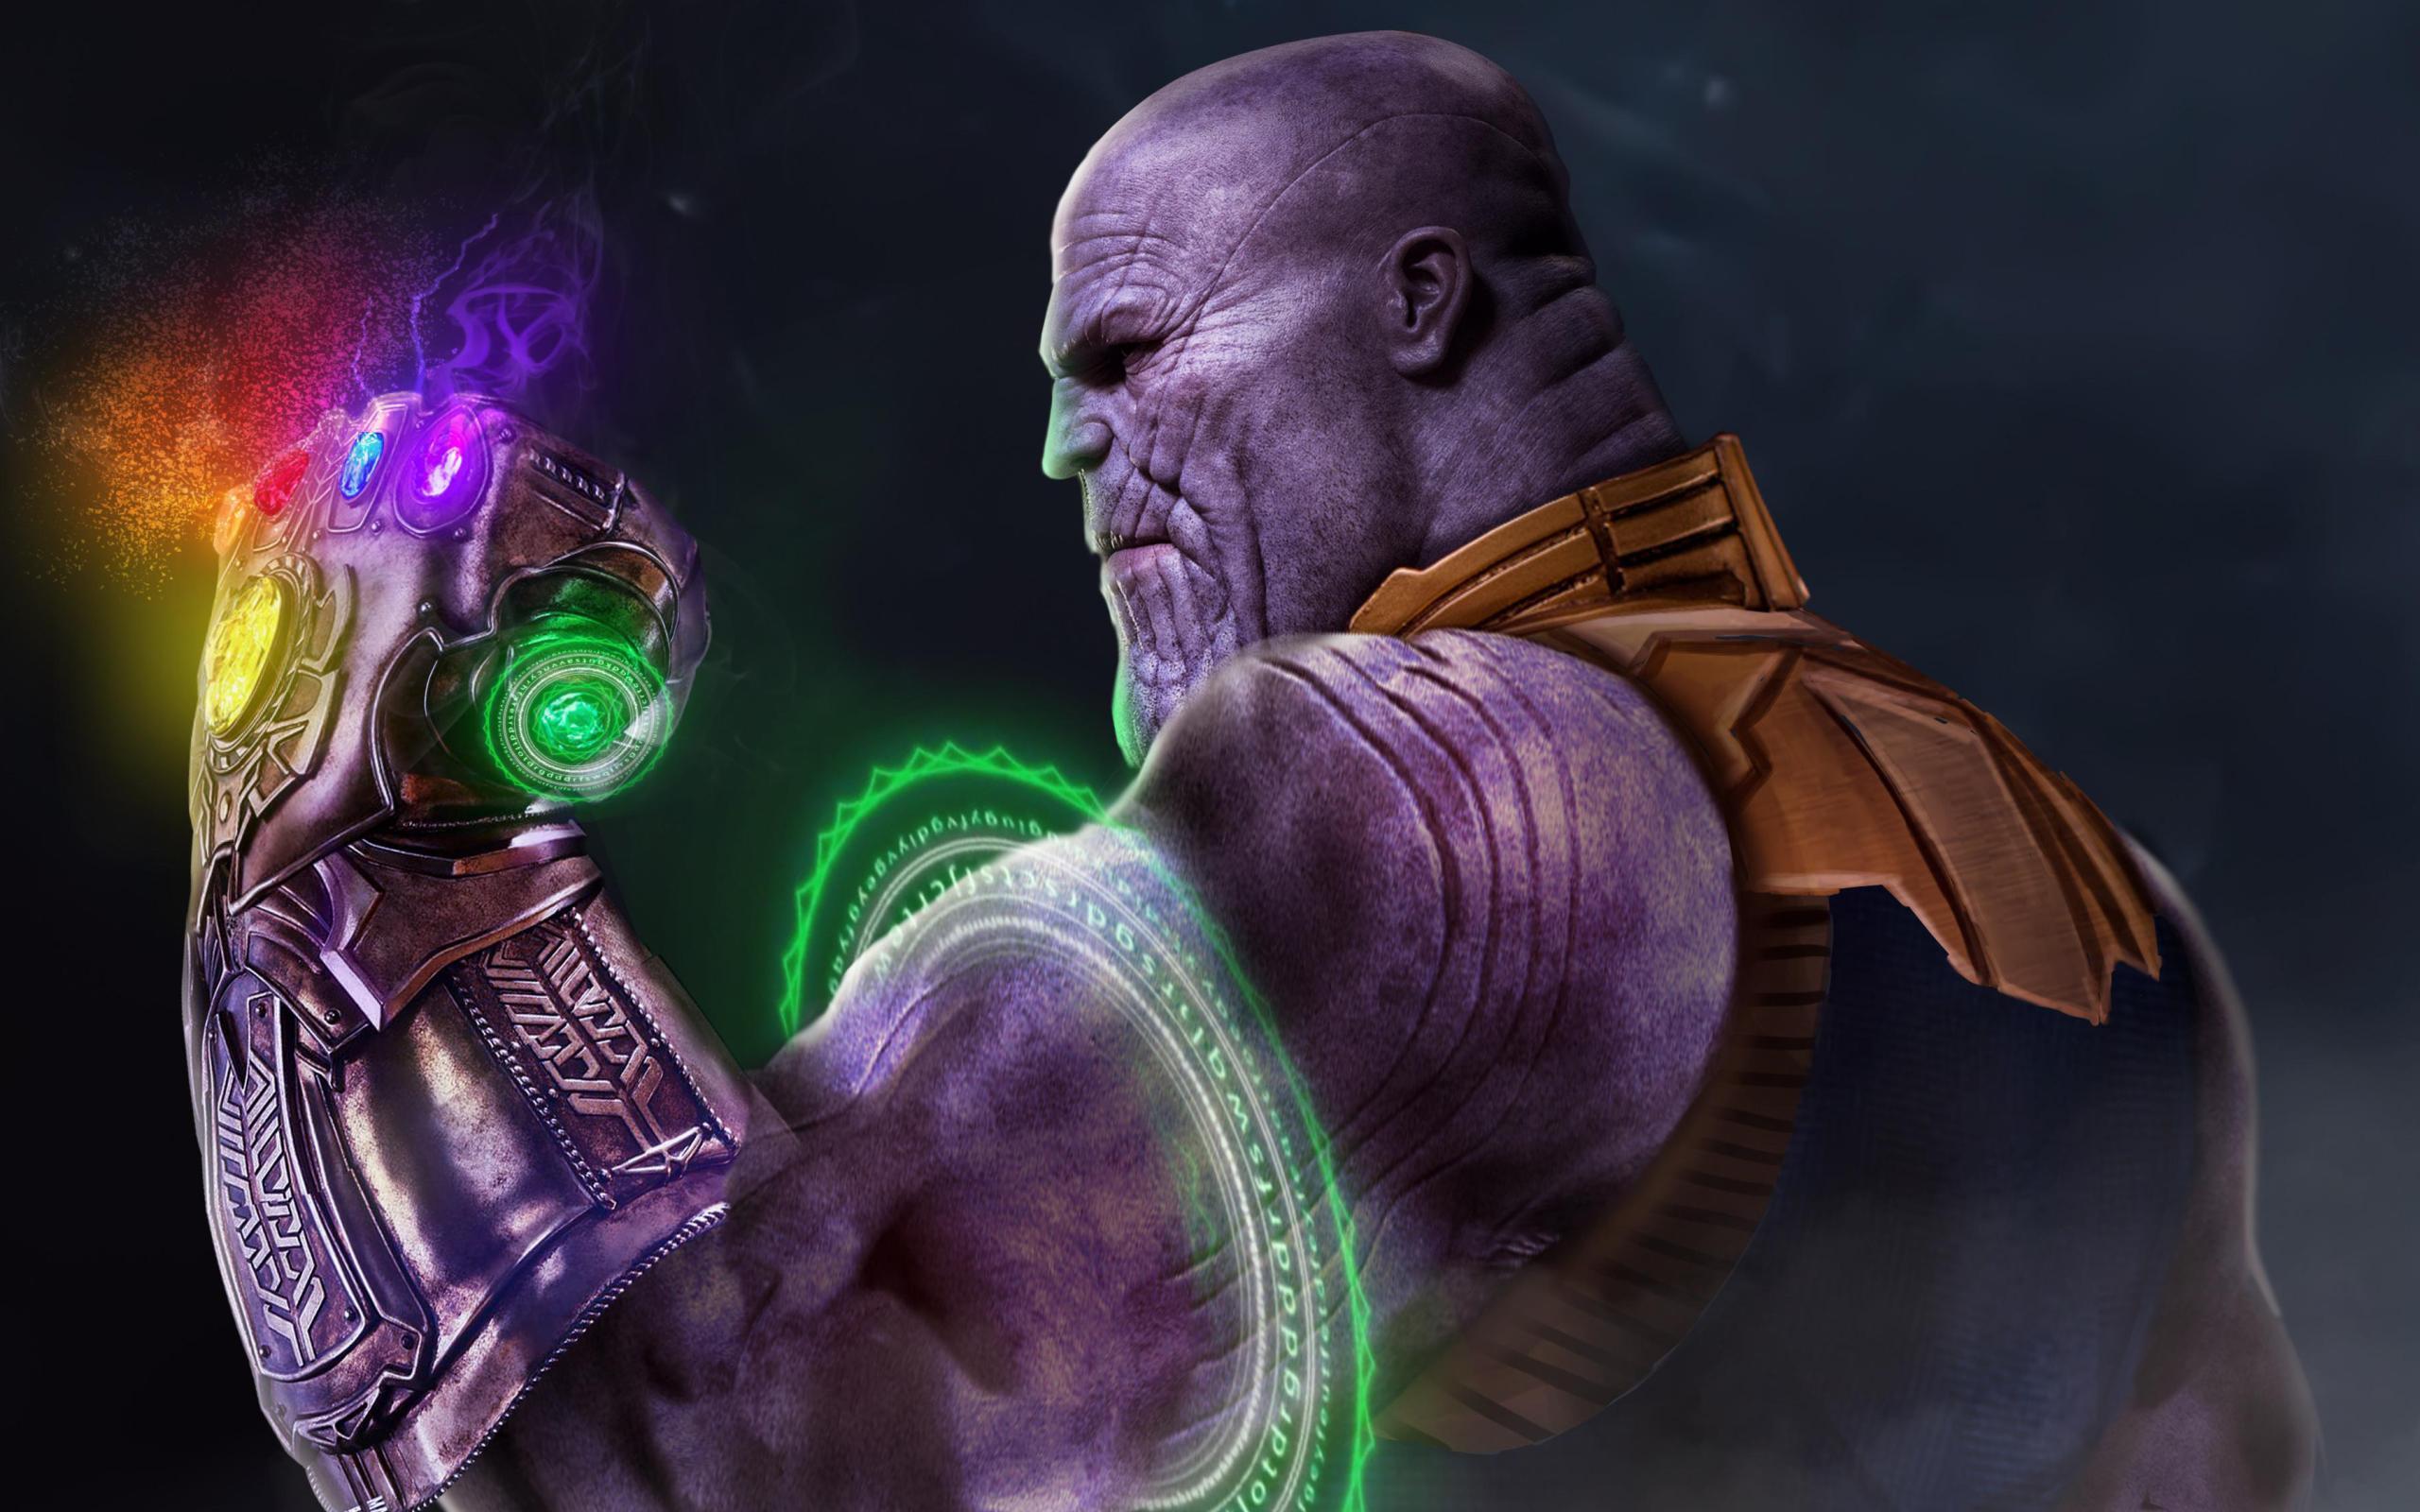 Wallpaper of Avengers, EndGame, Infinity Gauntlet, Thanos